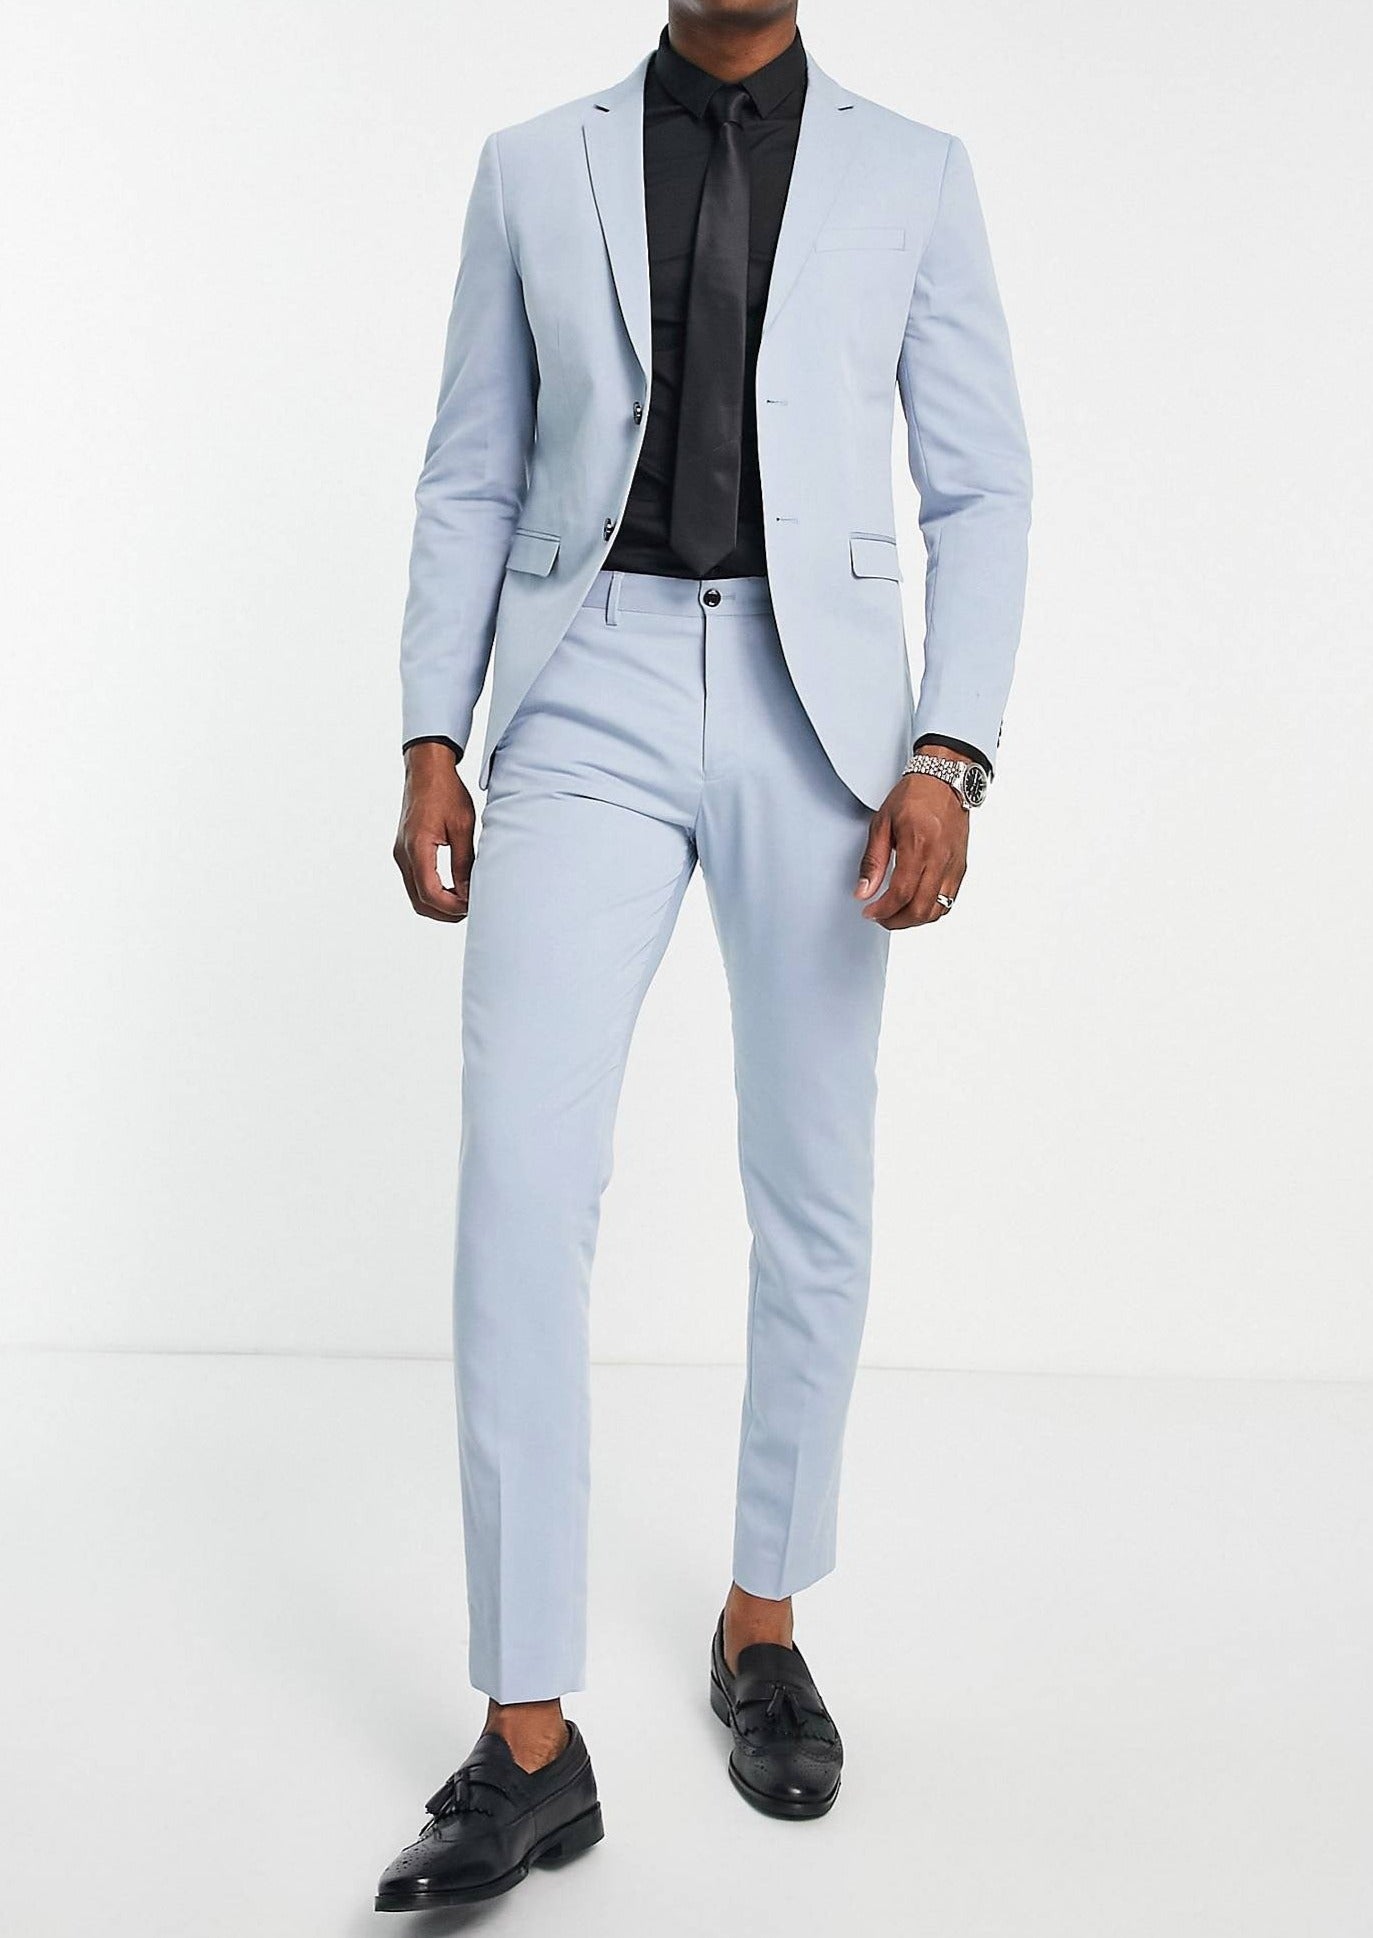 Lavender Pant Suit for Women, Office Pant Suit Set for Women, Blazer Suit  Set Womens, High Waist Straight Pants, Blazer and Trousers Women - Etsy |  Pantsuits for women, Pant suits for